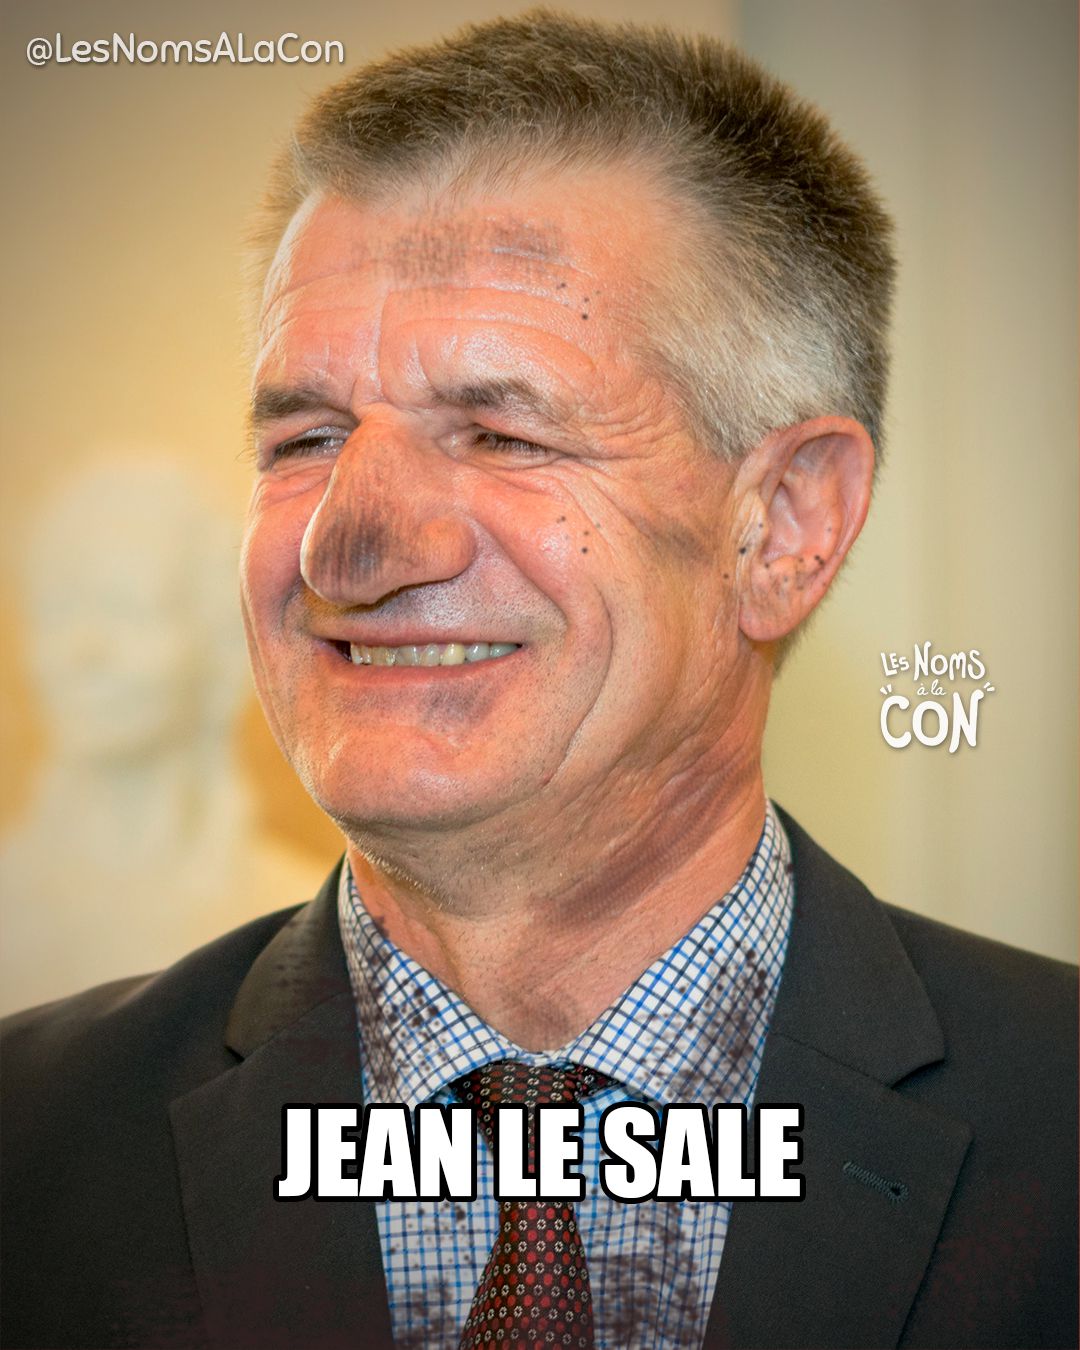 Jean Le sale